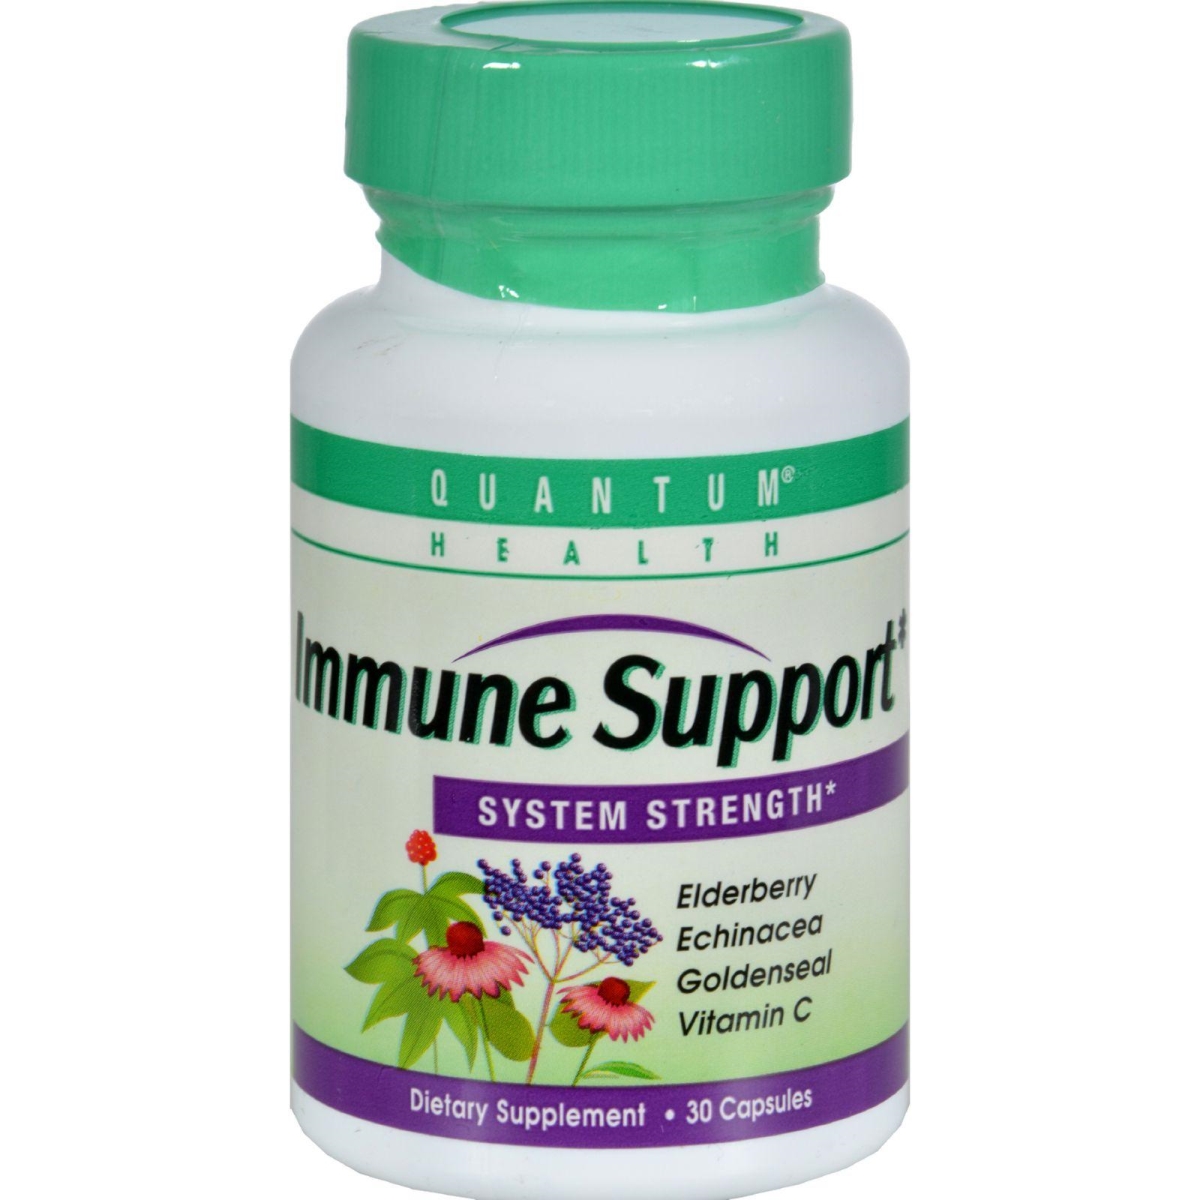 Hg0518761 Quantum Health Immune Support System Strength - 30 Capsules